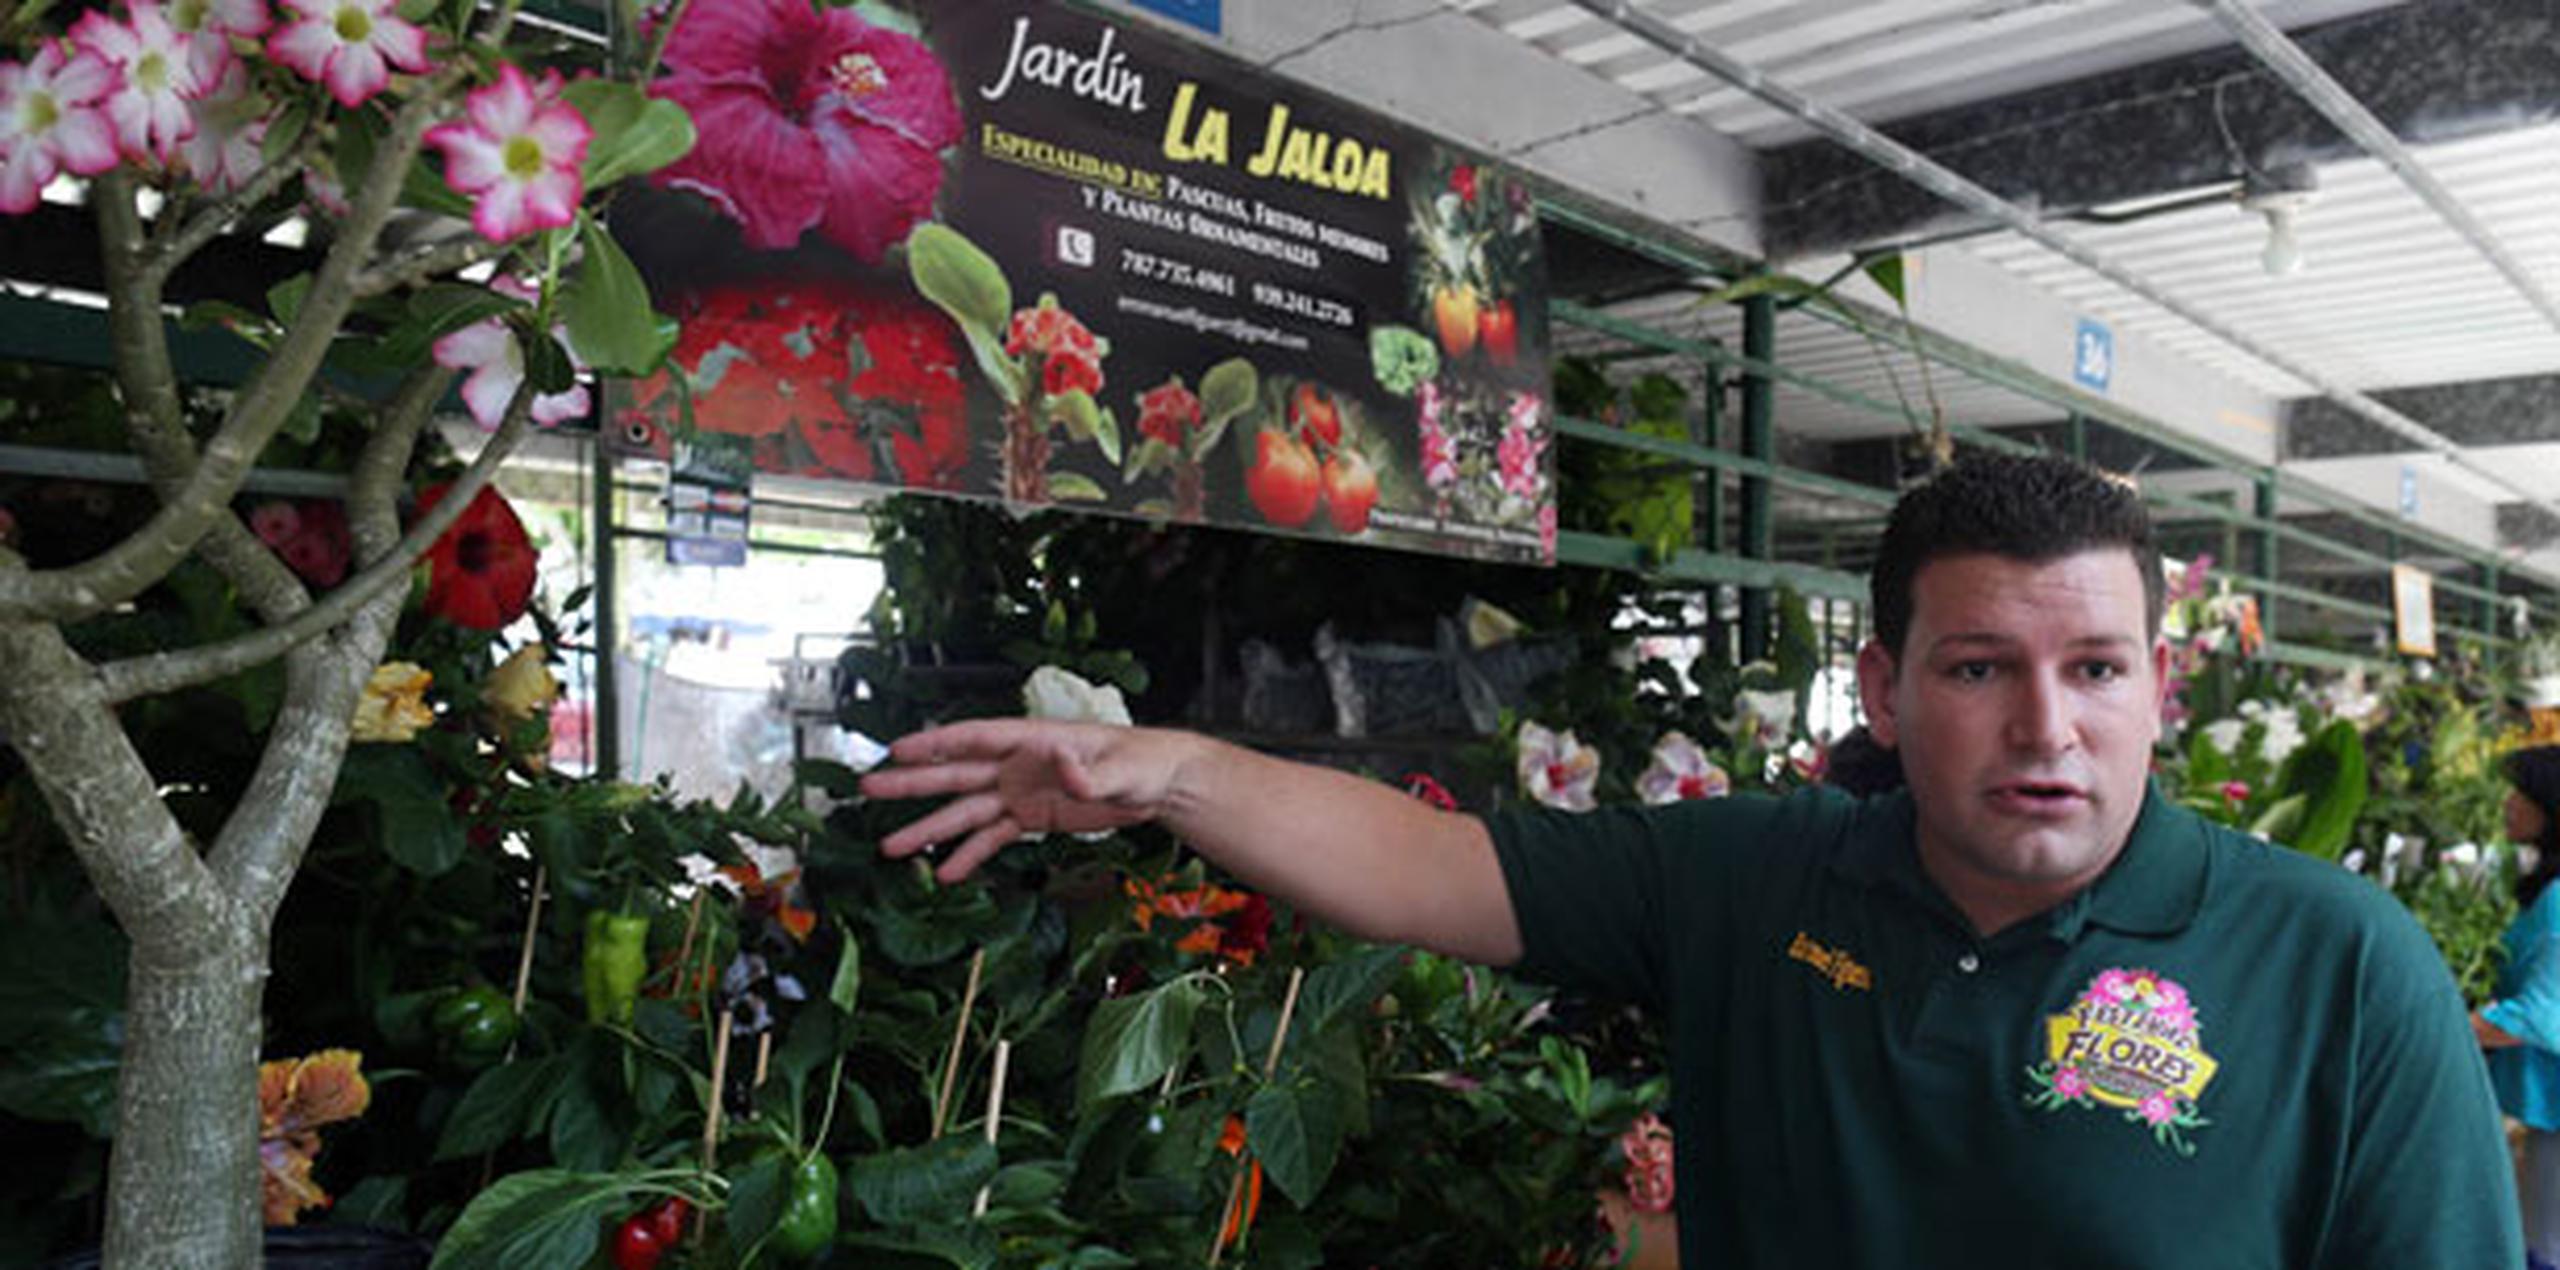 Emmanuel Figueroa, un duro en el cultivo de amapolas, orientaba a los visitantes sobre el cuidado de estas flores. (david.villafane@gfrmedia.com)